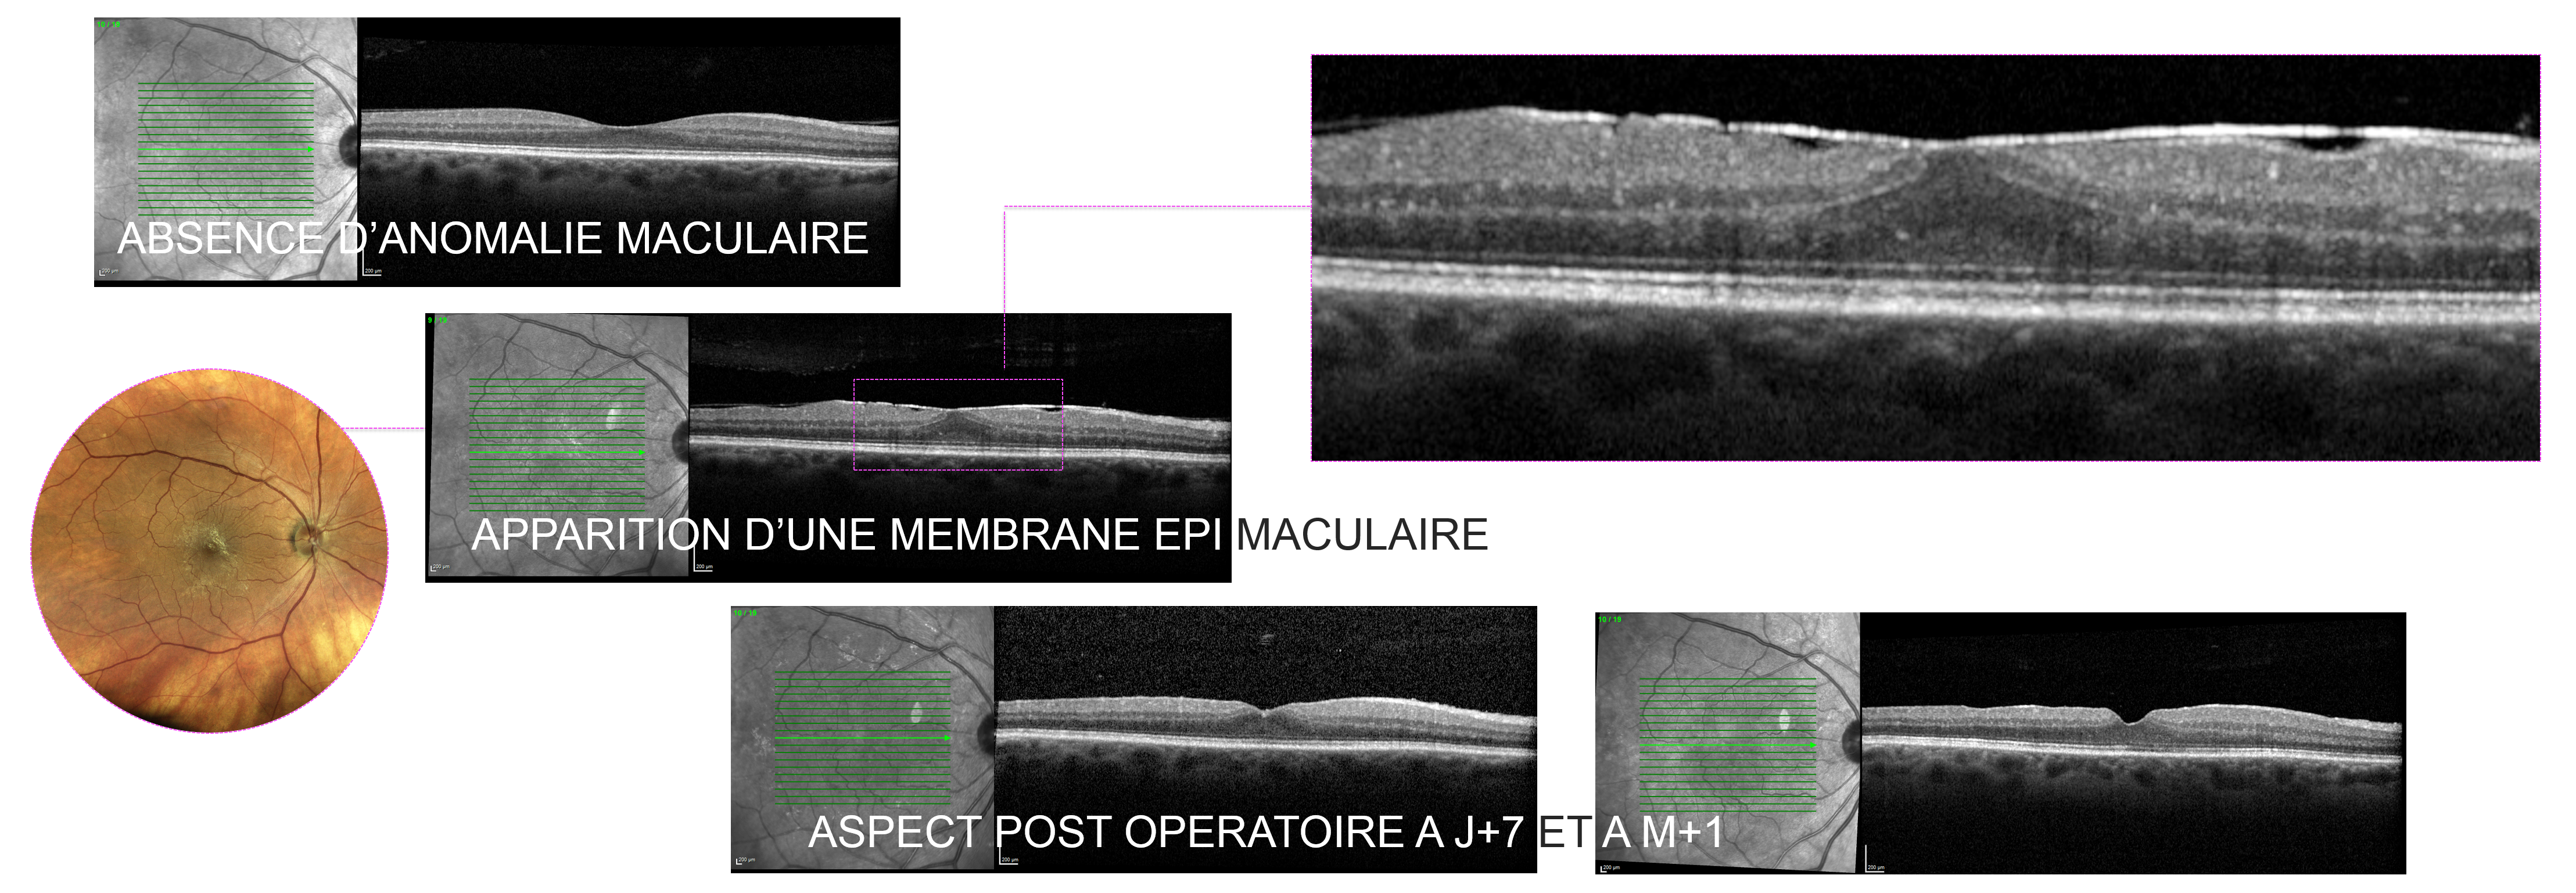 membrane épi-rétinienne : évolution avant et après traitement chirurgical par vitrectomie pelage